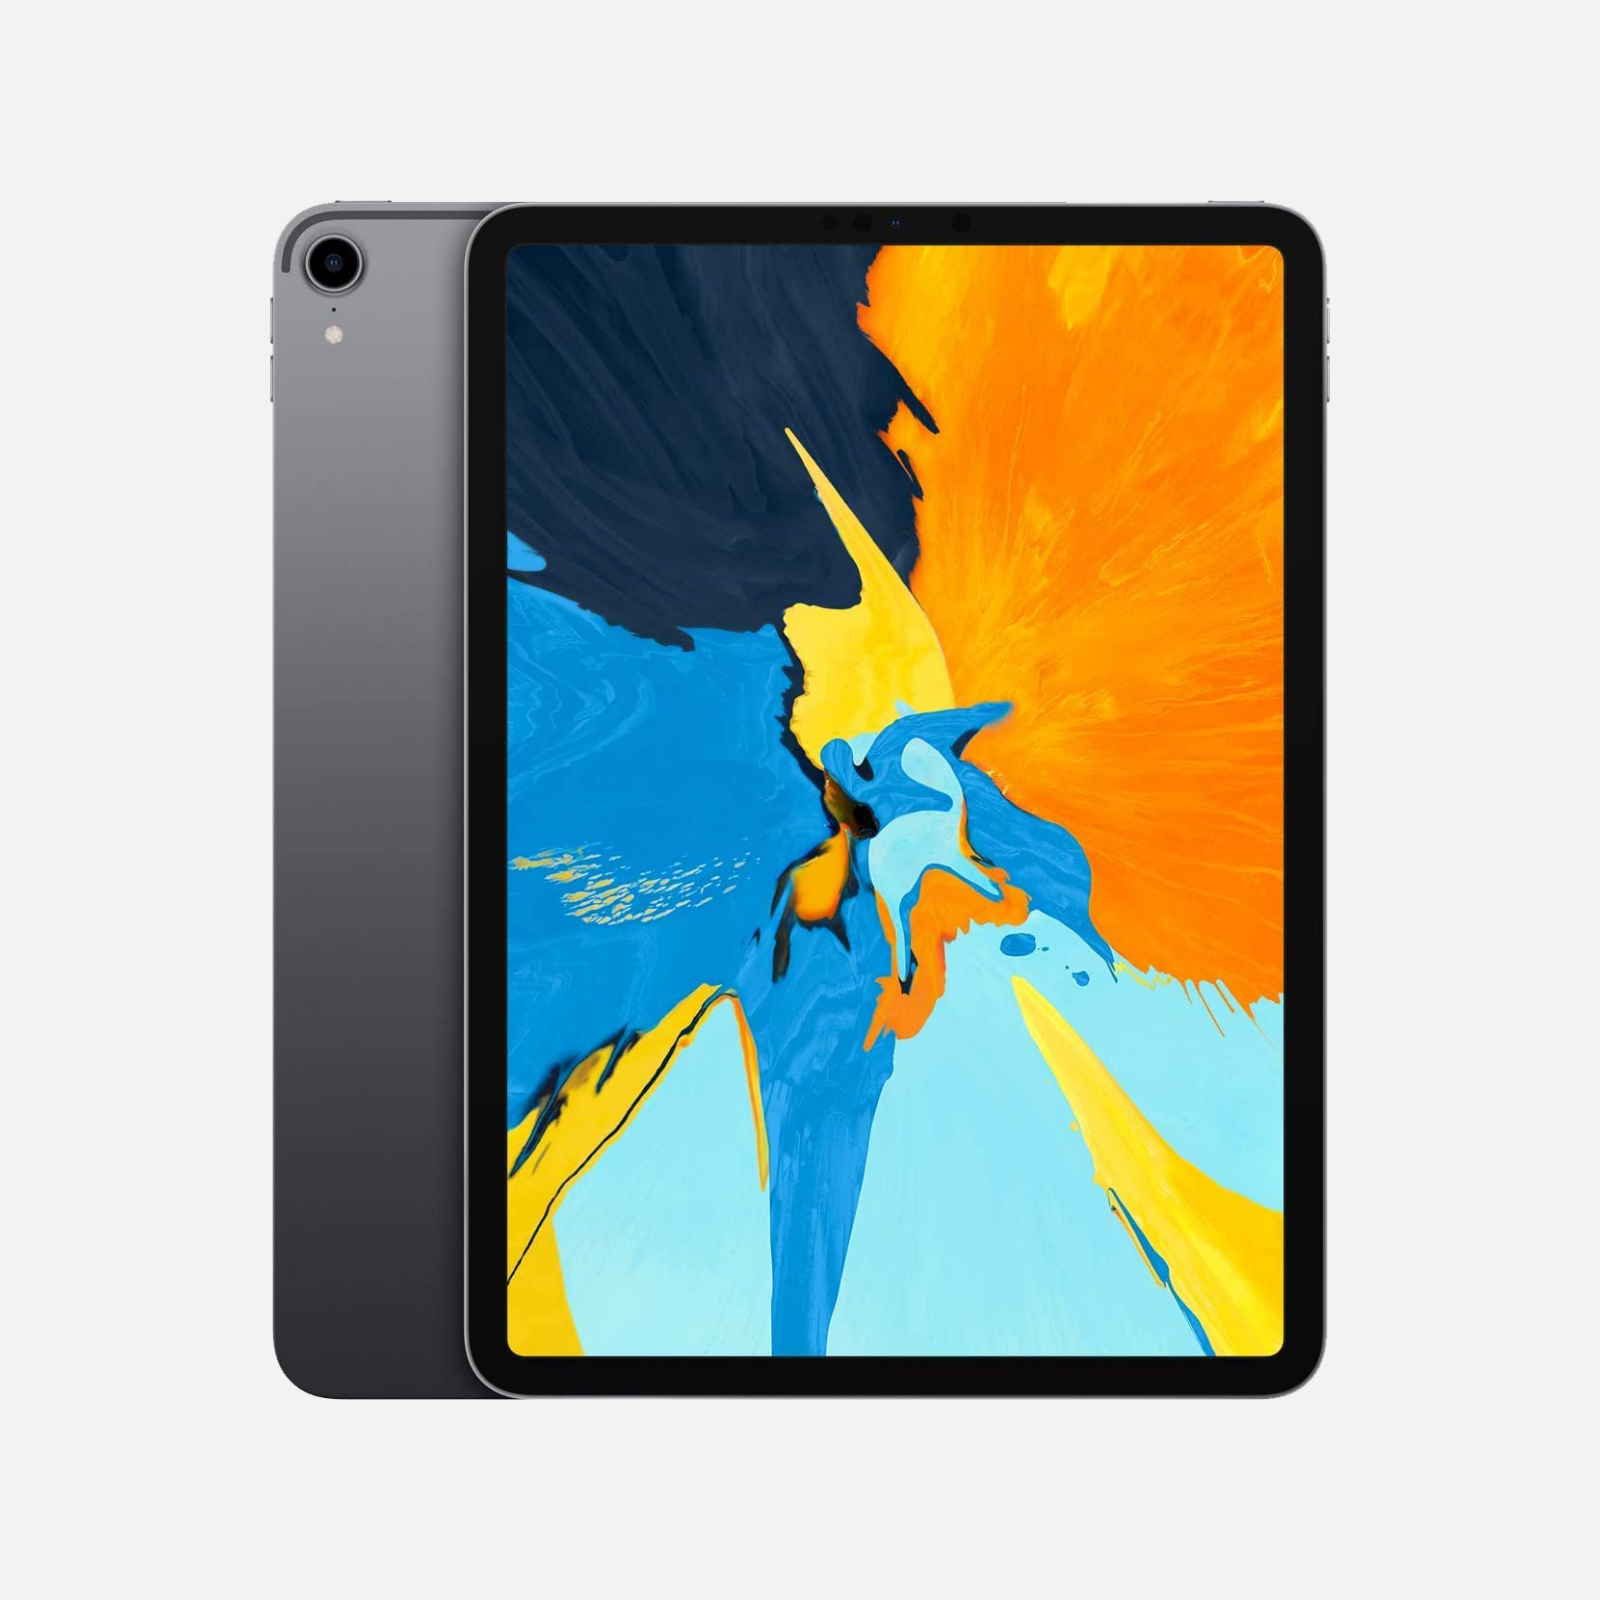 iPad Pro 11 (2018) の最適な壁紙サイズ